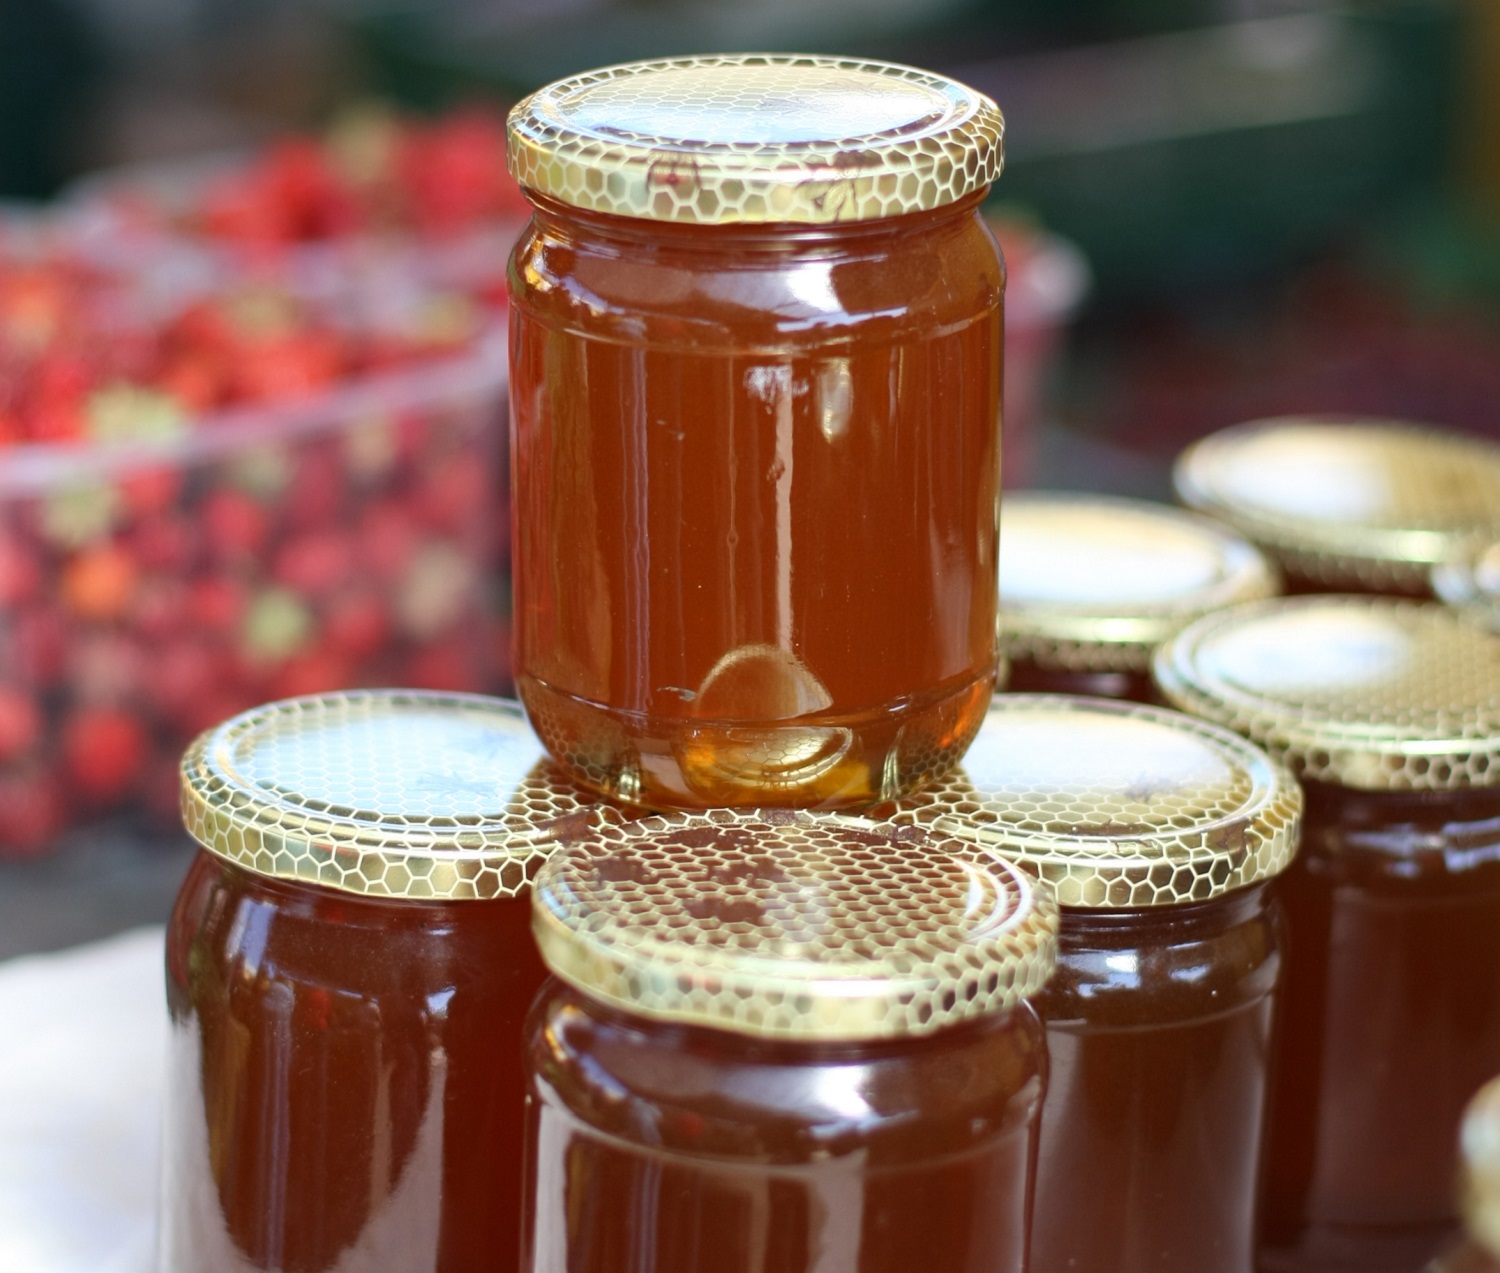 Šiandienos aktualijos: iššūkiai lietuviškam medui, ne europietiški atlyginimai ir maisto atliekų surinkimas